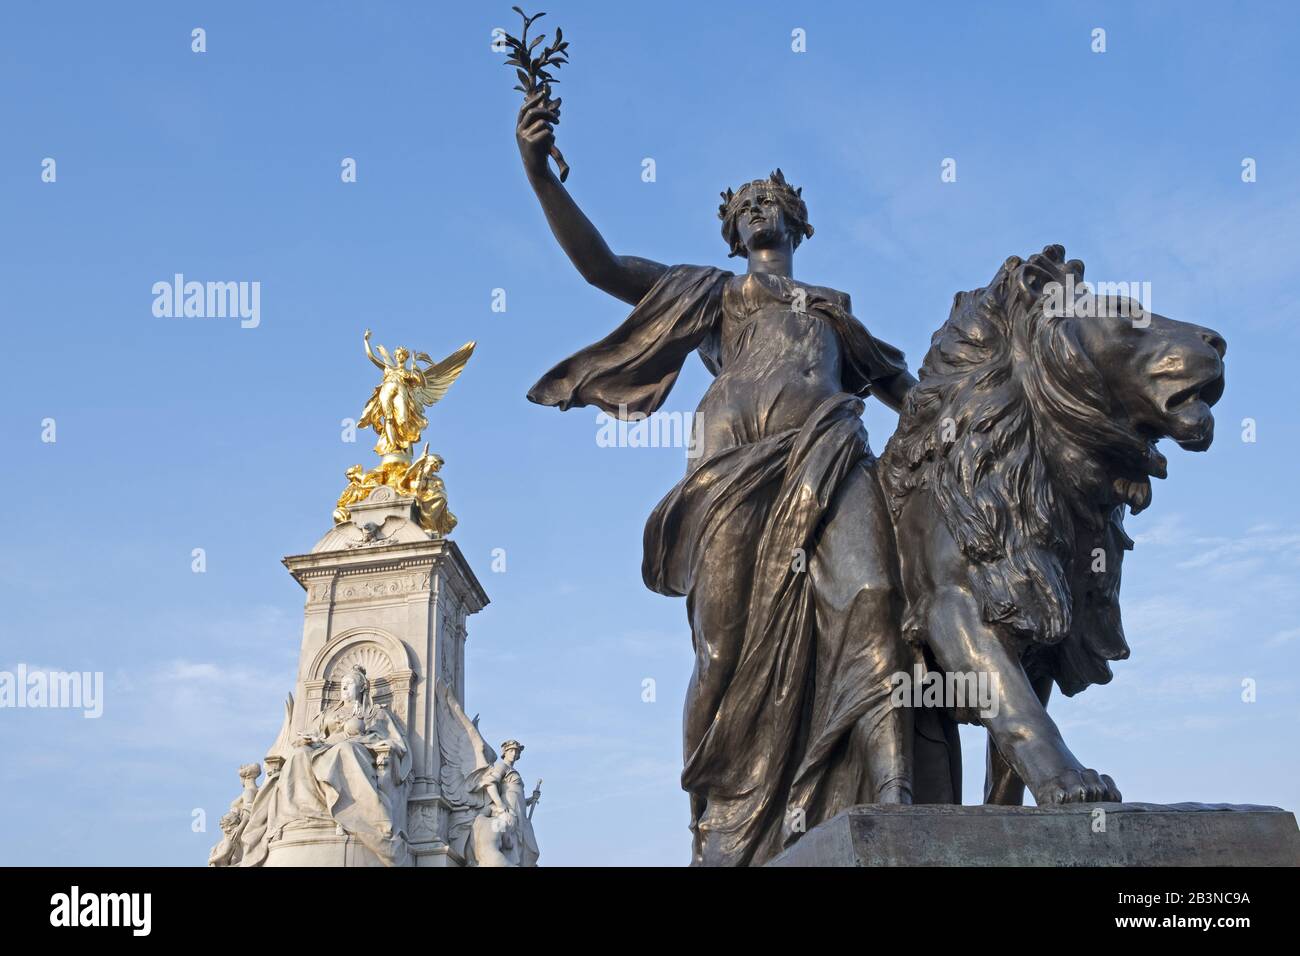 La statua del Victoria Memorial fuori da Buckingham Palace, la residenza ufficiale della Regina a Londra, Inghilterra, Regno Unito, Europa Foto Stock